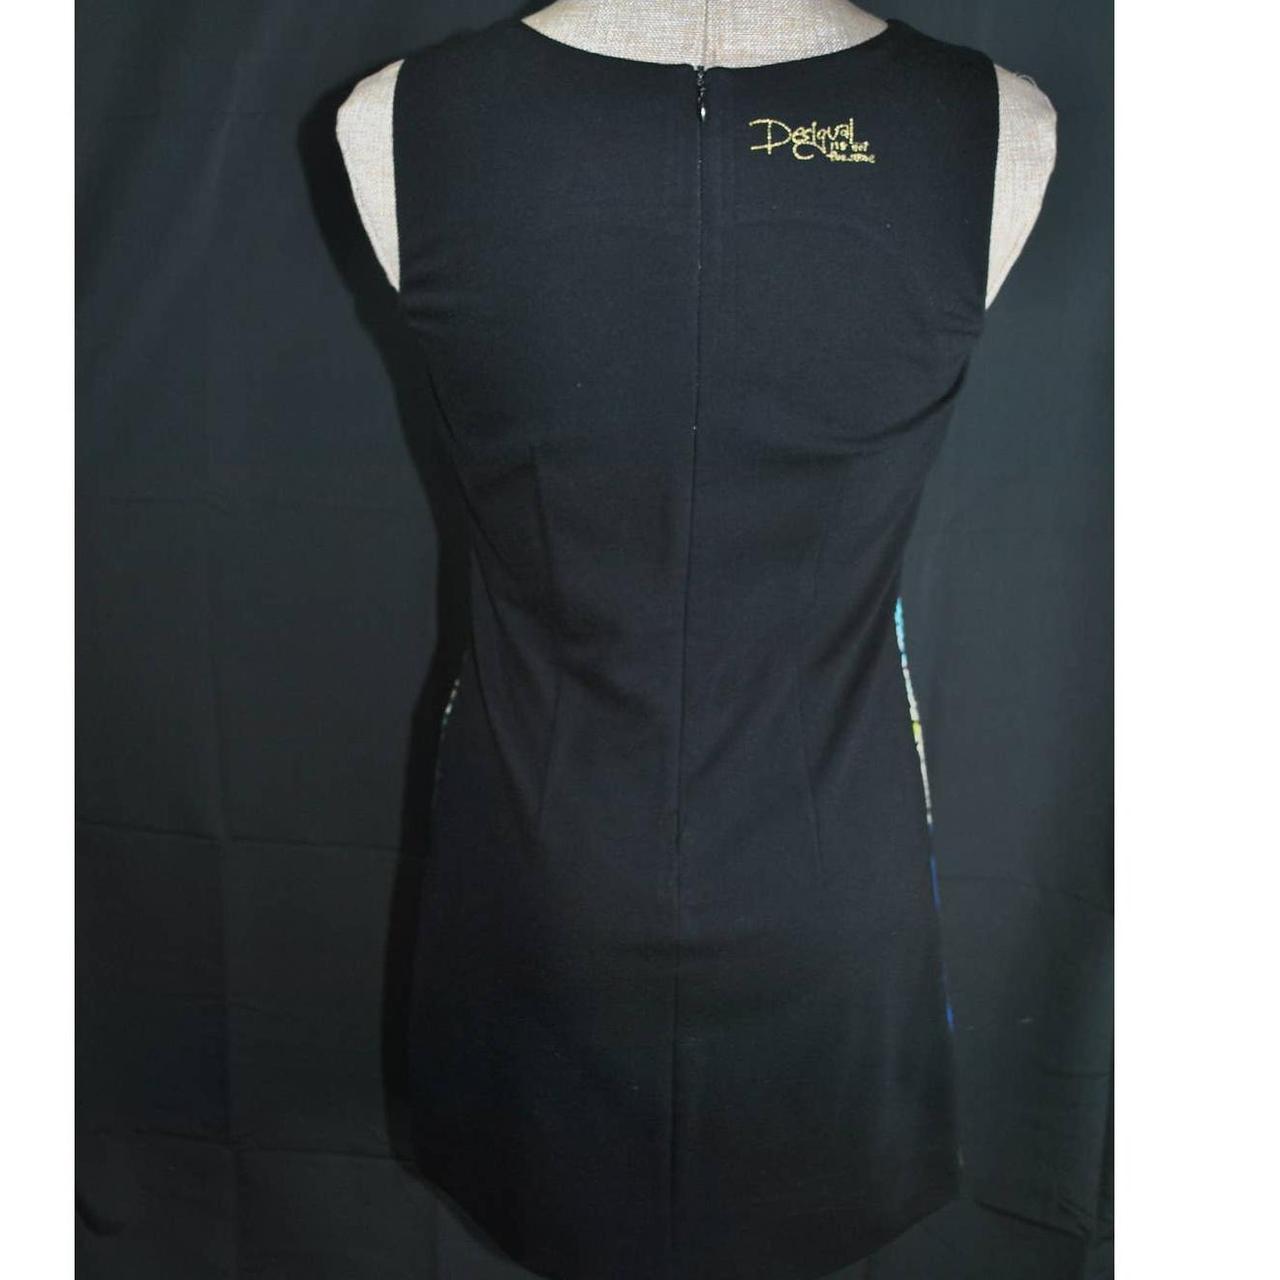 Product Image 3 - Desigual Patchwork Bodycon Dress 

Measurements
Underarm